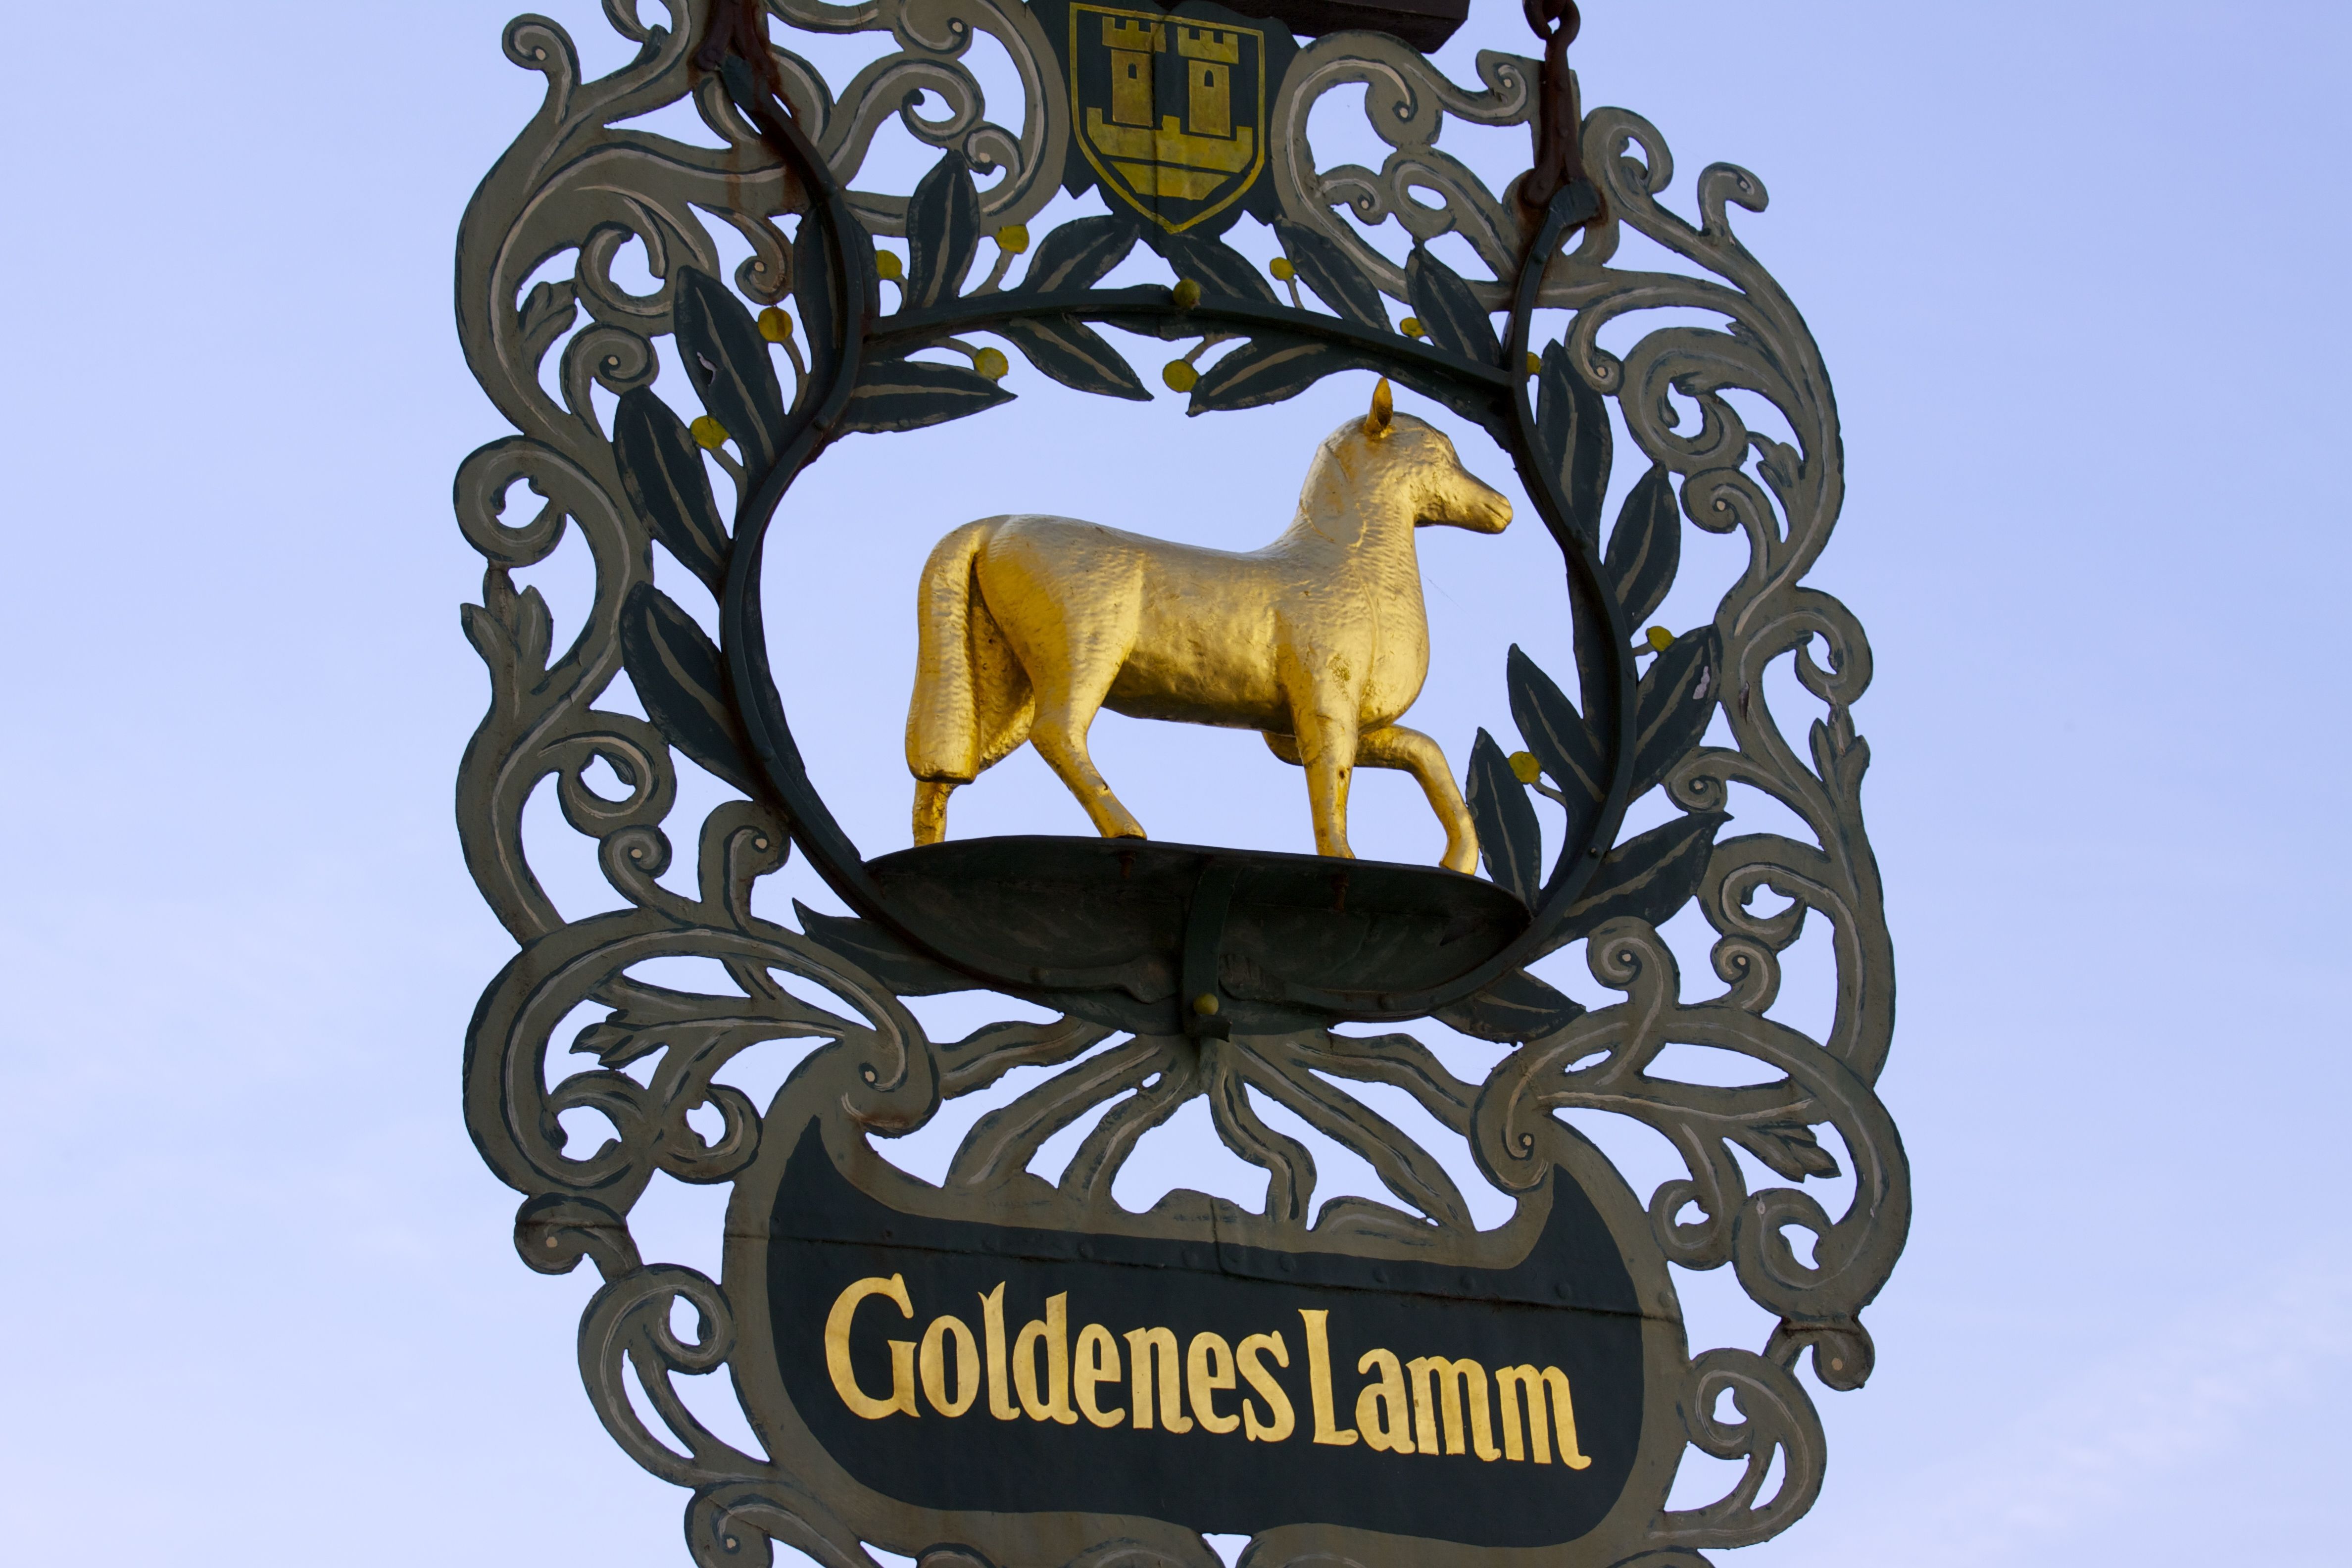 Goldenes Lamm Hotel , Rothenburg ob der Tauber by Richard Ainsworth ...